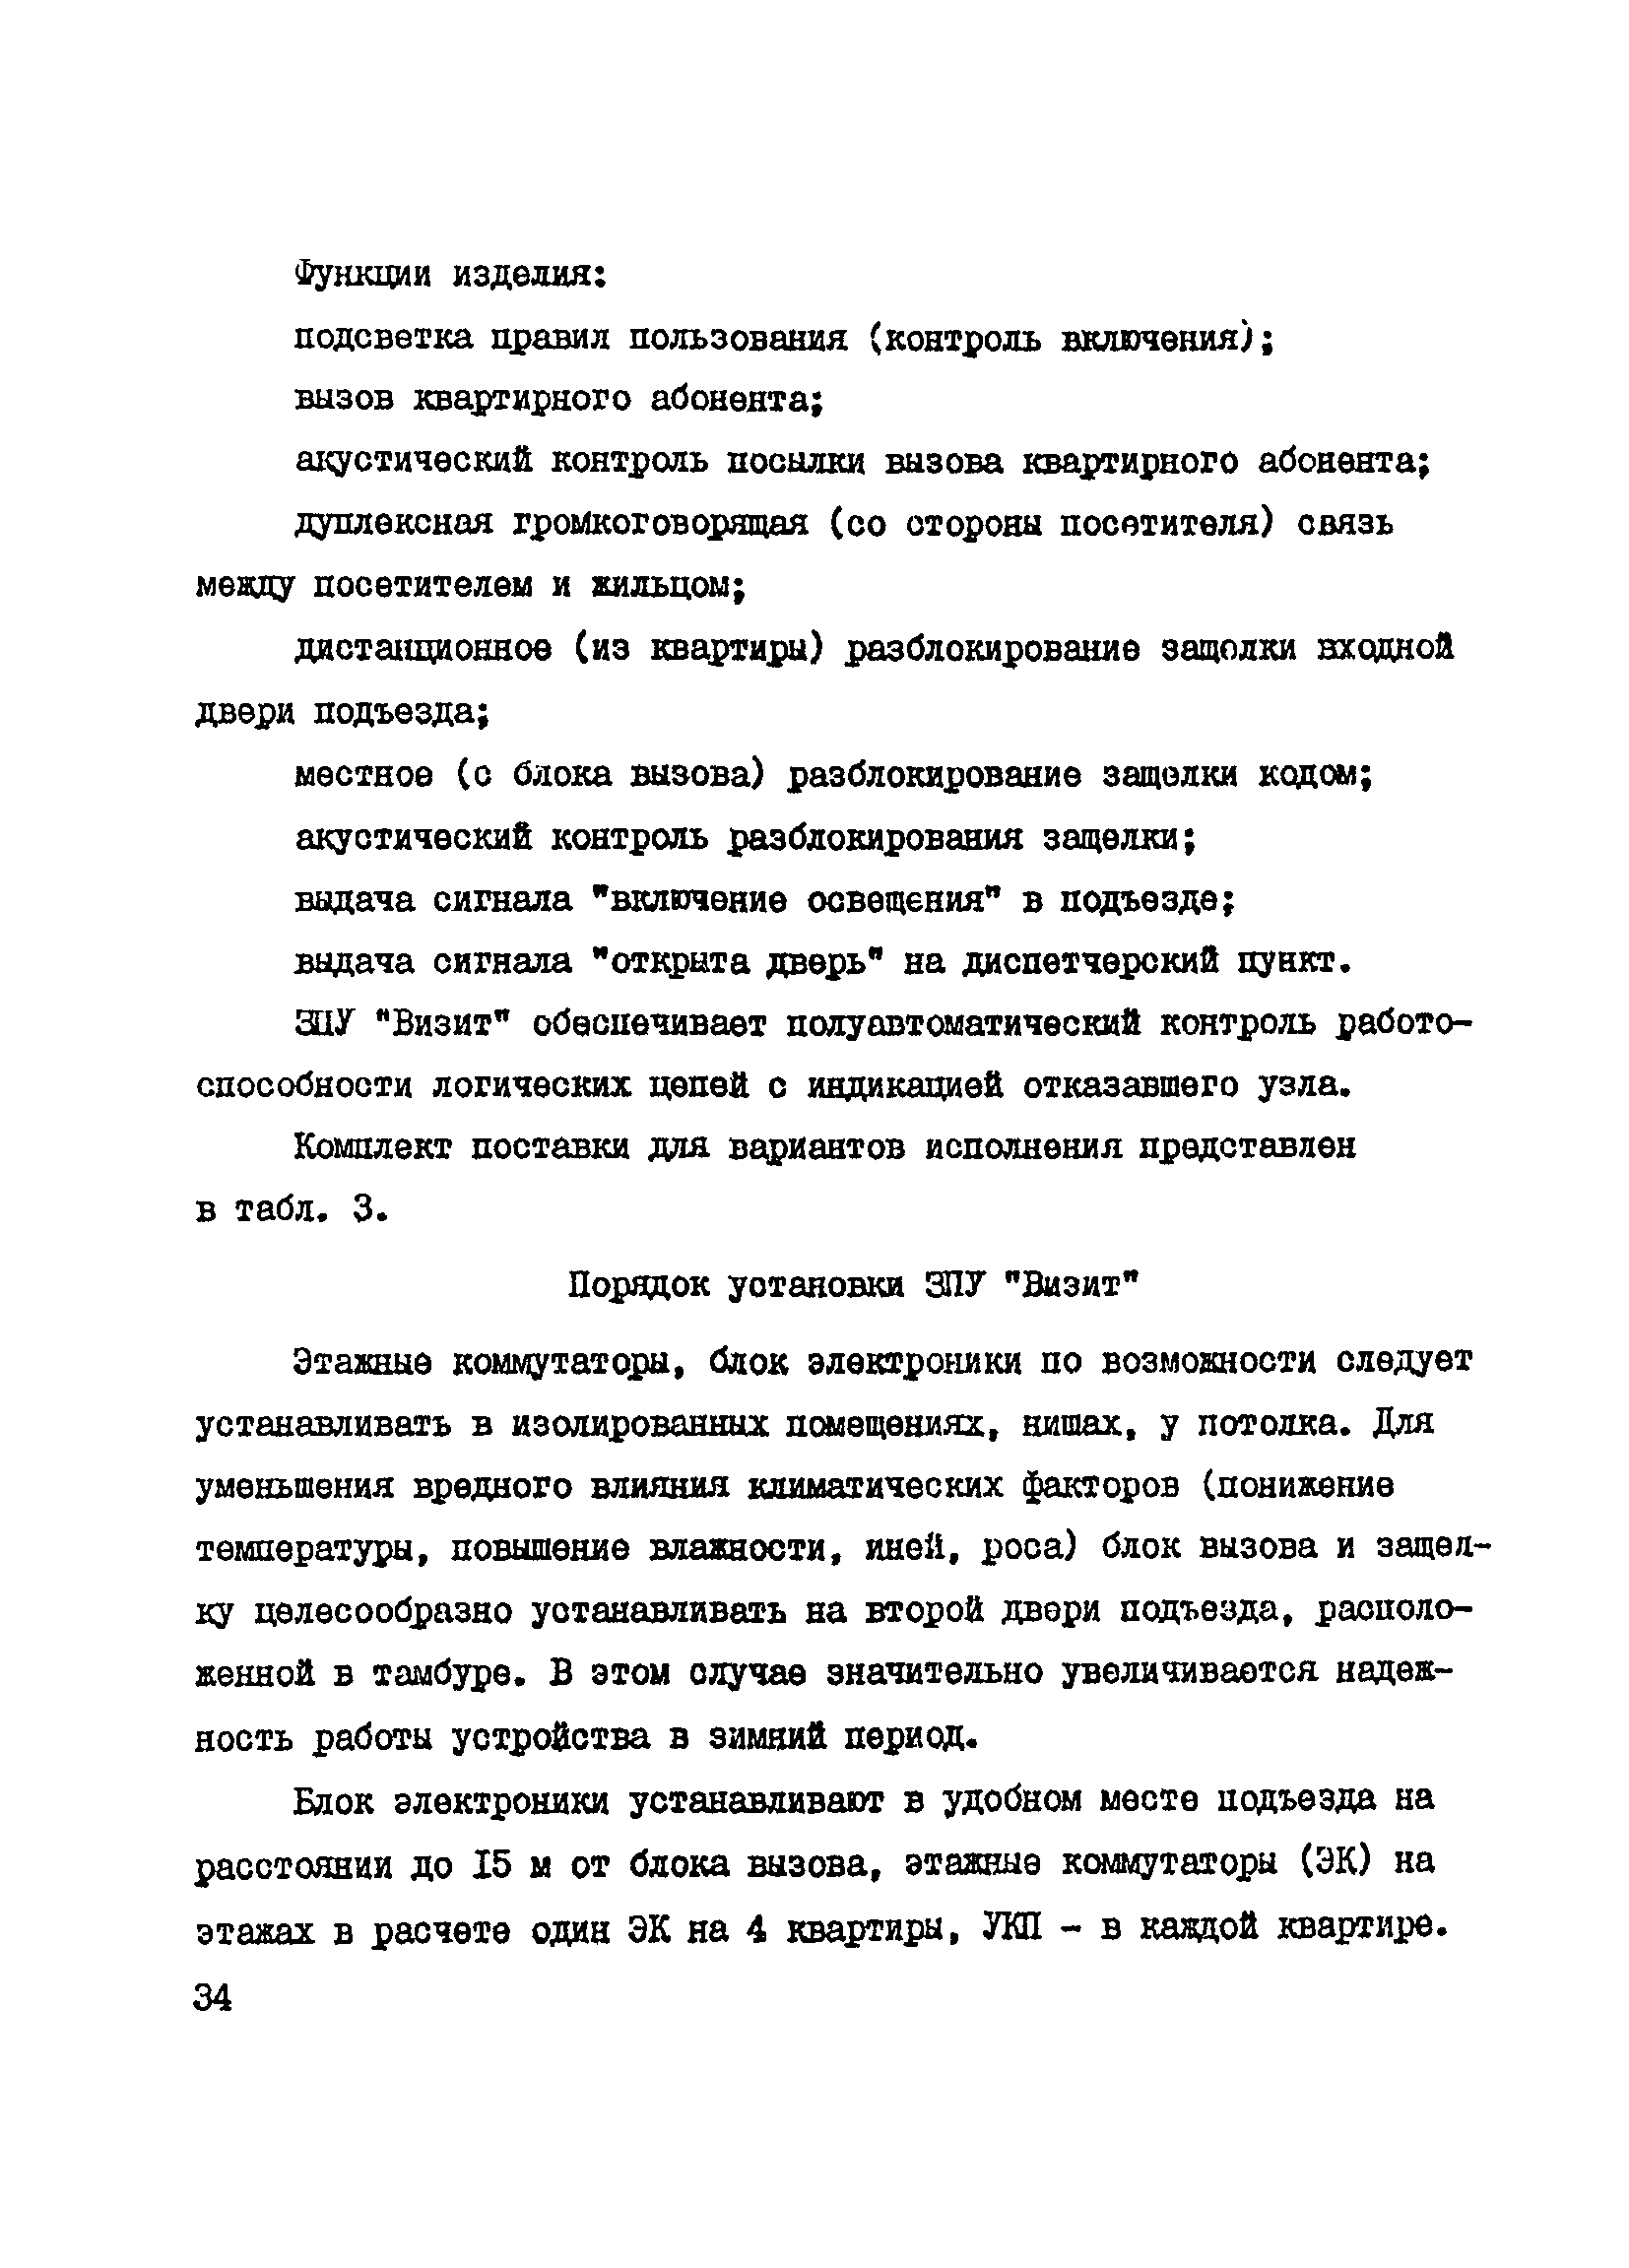 Справочное пособие к ВСН 60-89